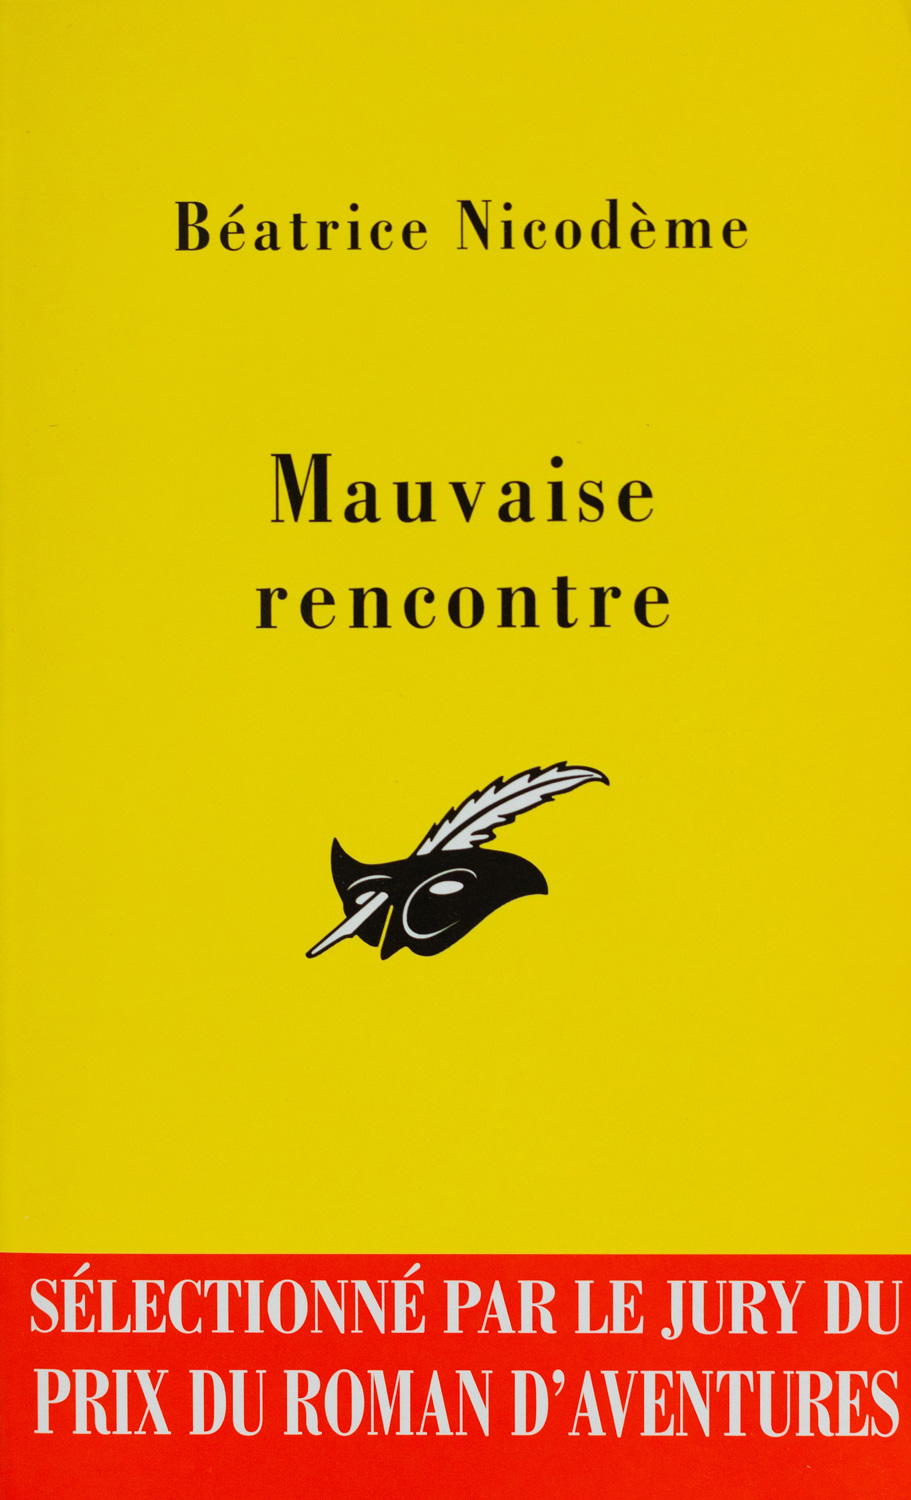 Beatrice Nicodeme autrice couverture du roman Mauvaise rencontre